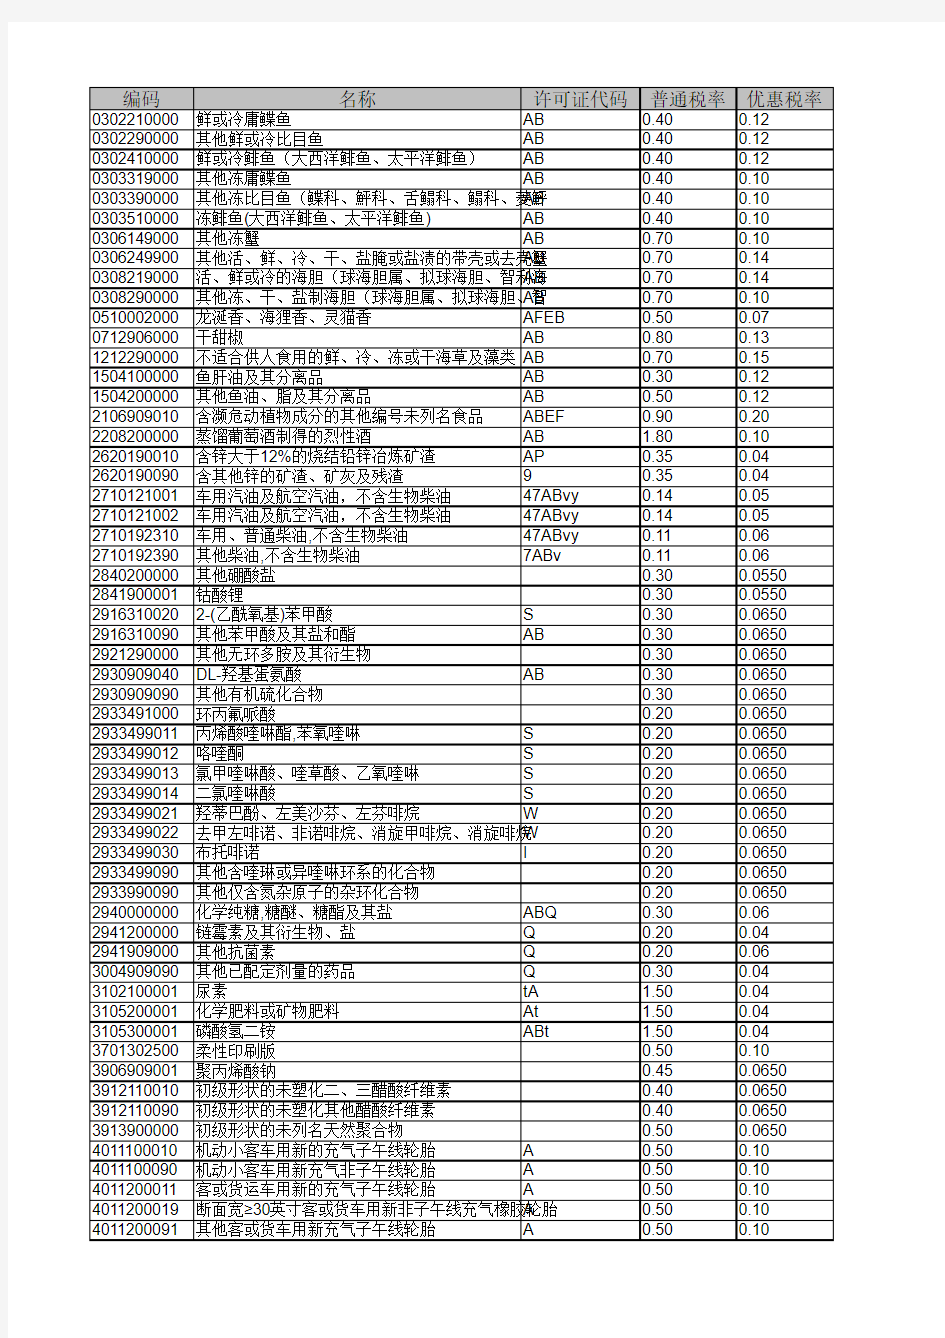 2015年海关商品编码对照表